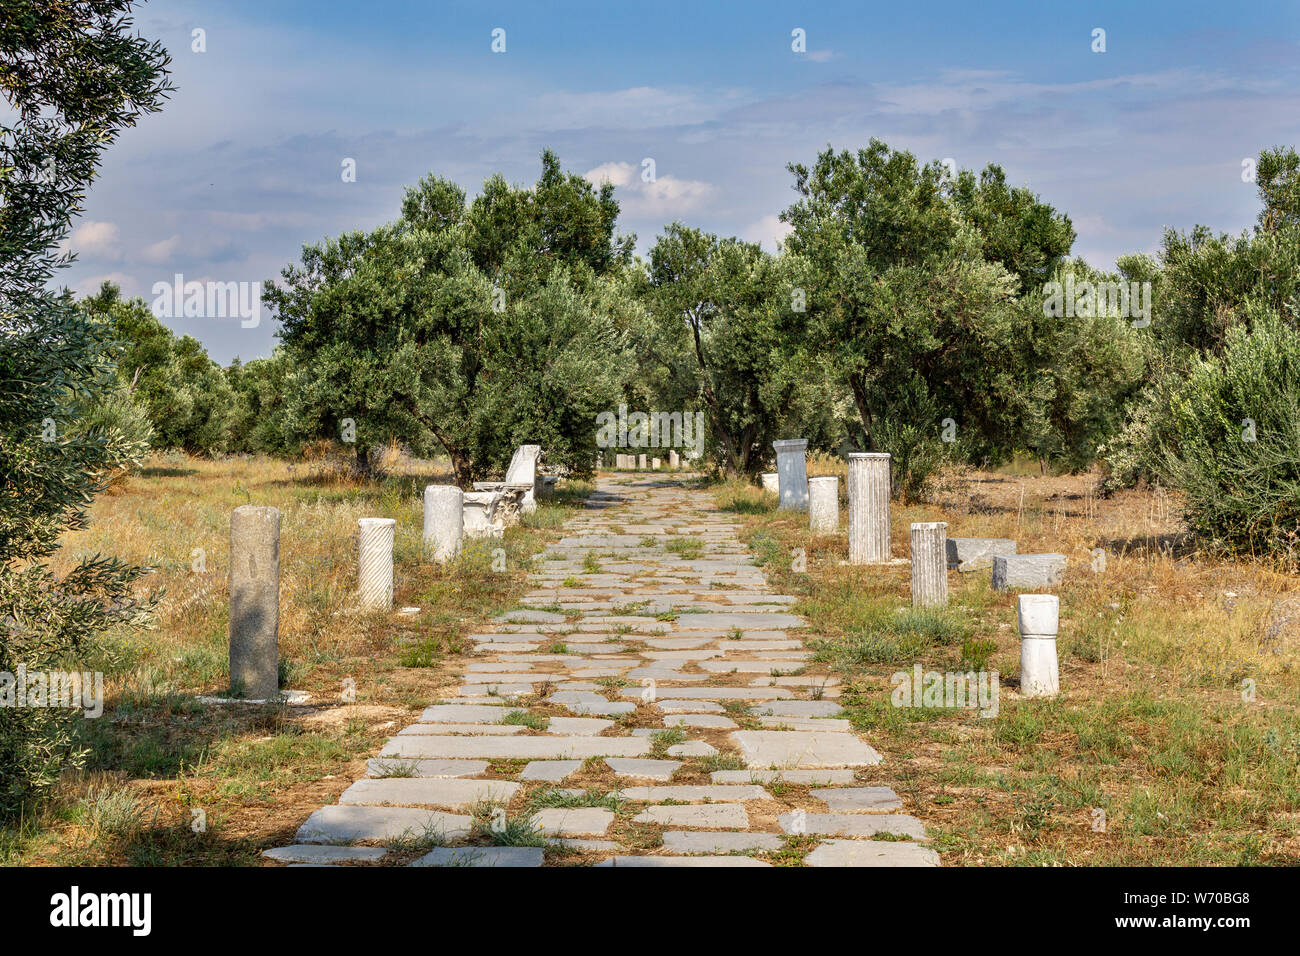 Alter alten römischen Straße und antike römische Steinsäulen. Olivenbäume Stockfoto